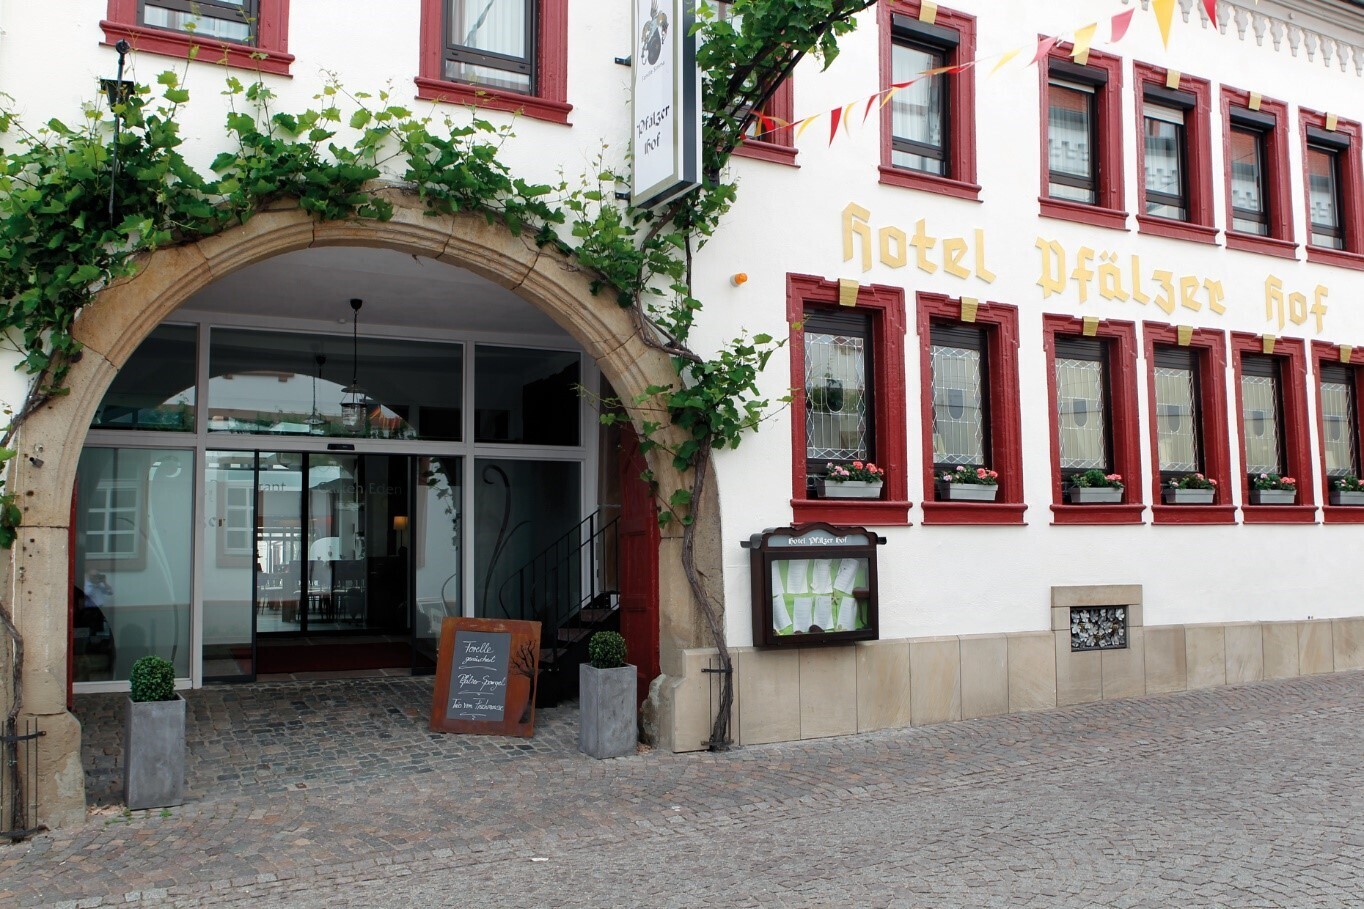 Hotel Restaurant Pfälzer Hof - ©Nicole Simma 